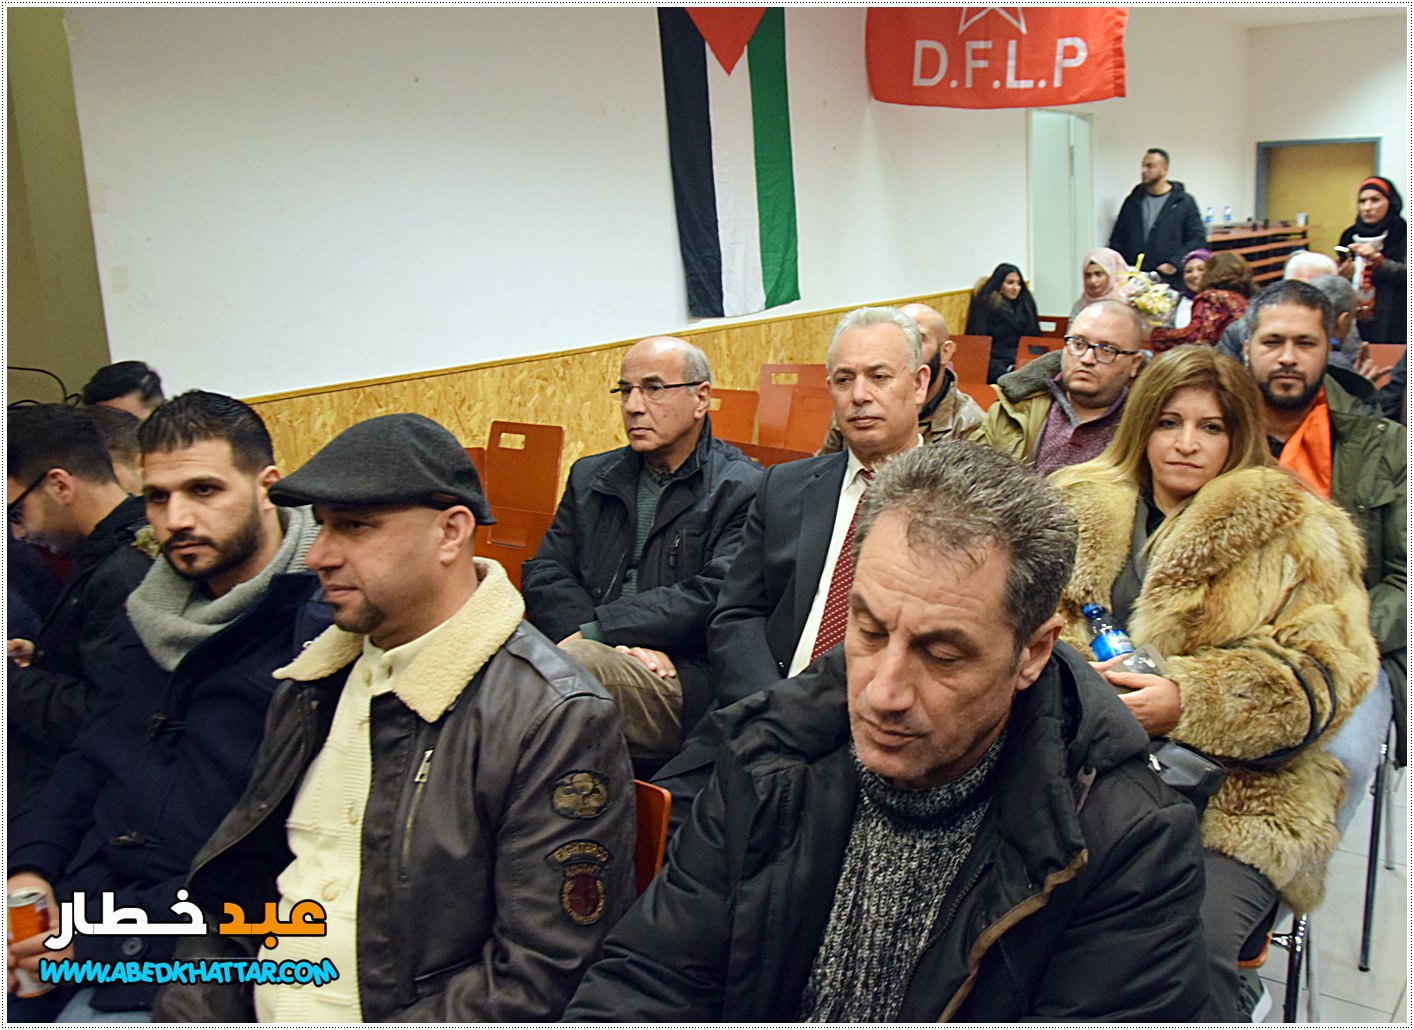 المانيا || مهرجان حاشد في إحياء اليوبيل الذهبي لانطلاقة الجبهة الديمقراطية لتحرير فلسطين في برلين